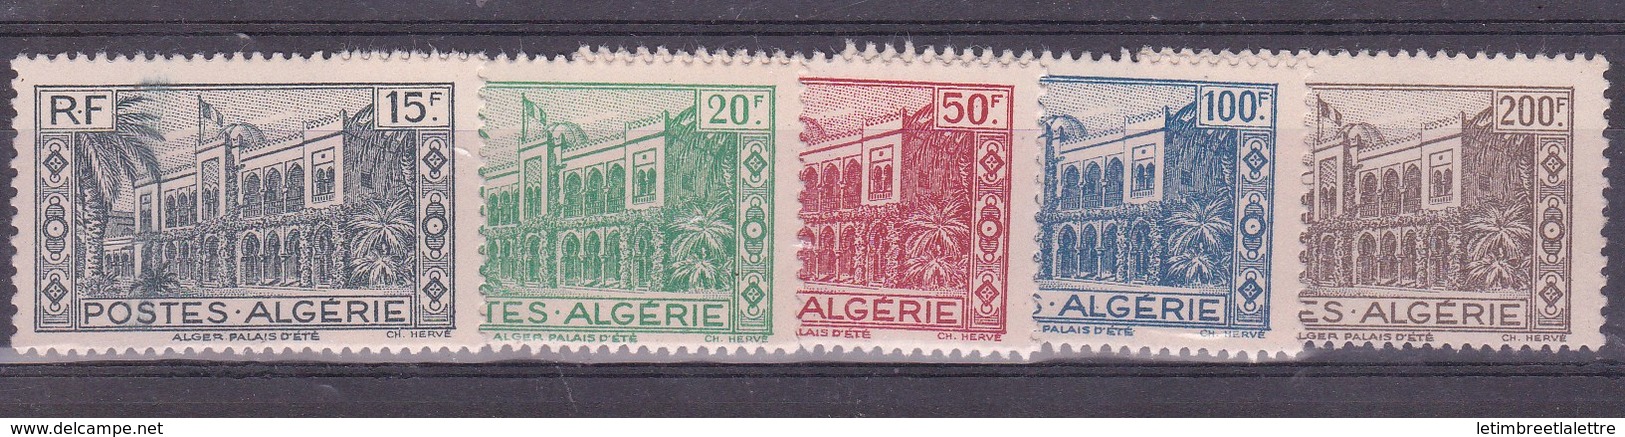 ⭐ Algérie - YT N° 200 à 204 ** - Neuf Sans Charnière - 1944 ⭐ - Ungebraucht